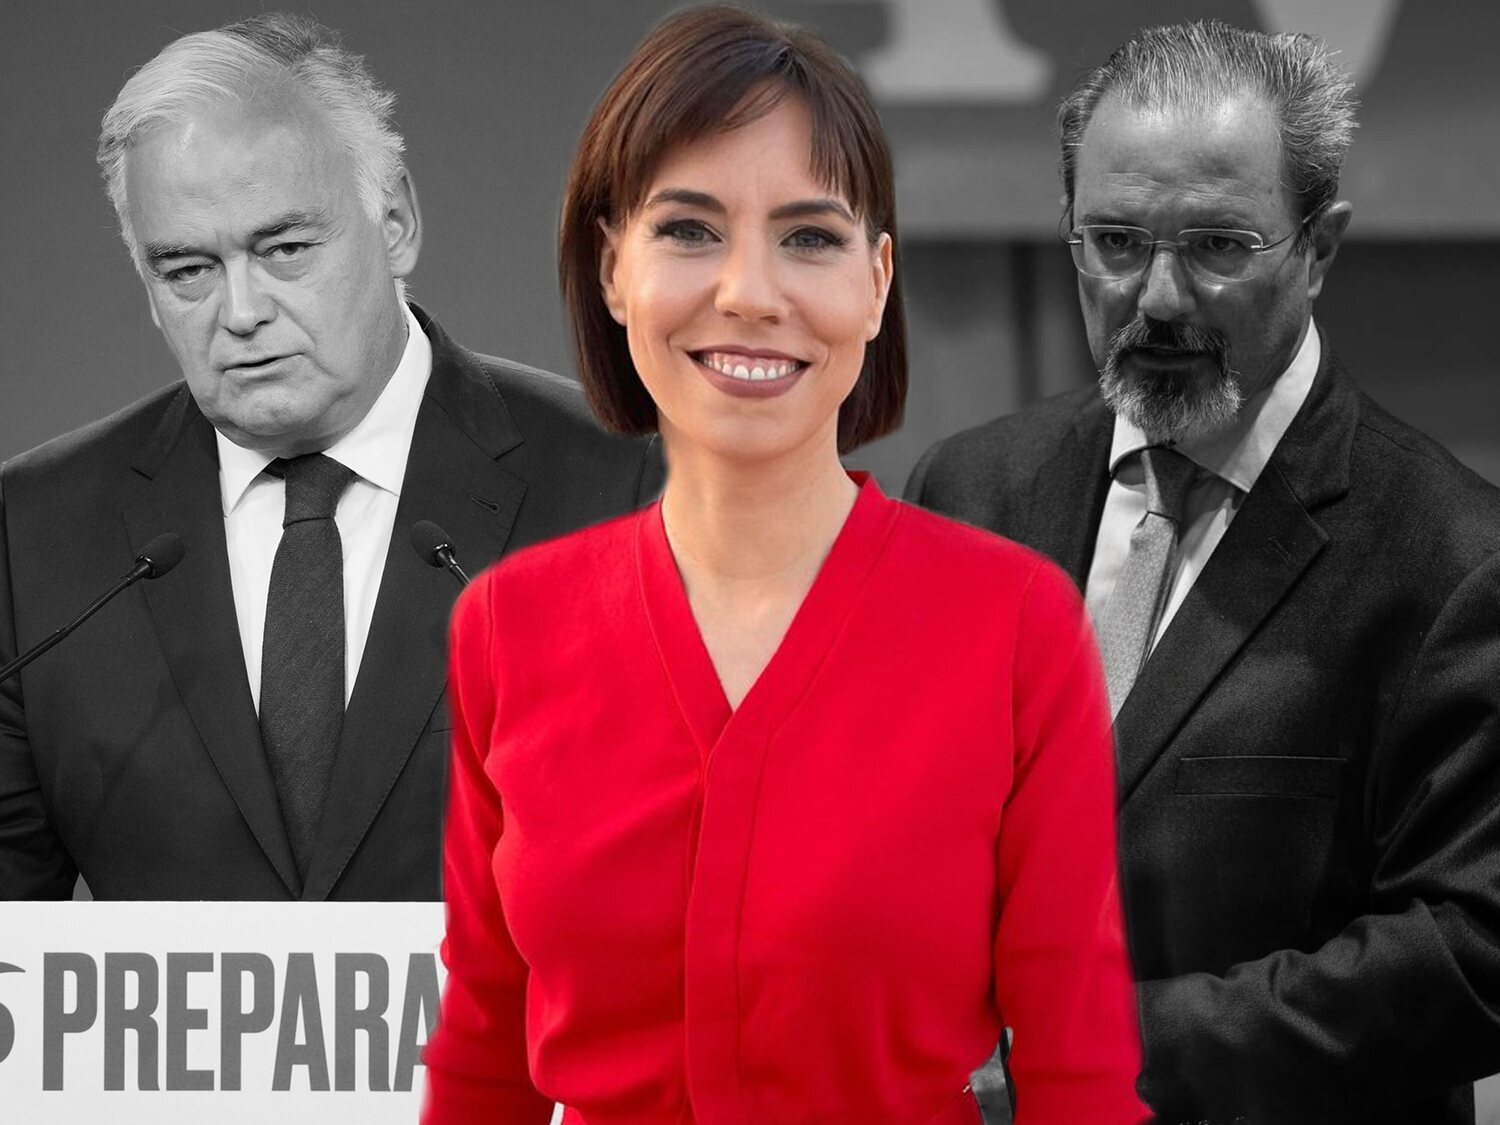 El trato machista de González Pons (PP) y Carlos Flores (VOX) a la ministra Diana Morant en un debate